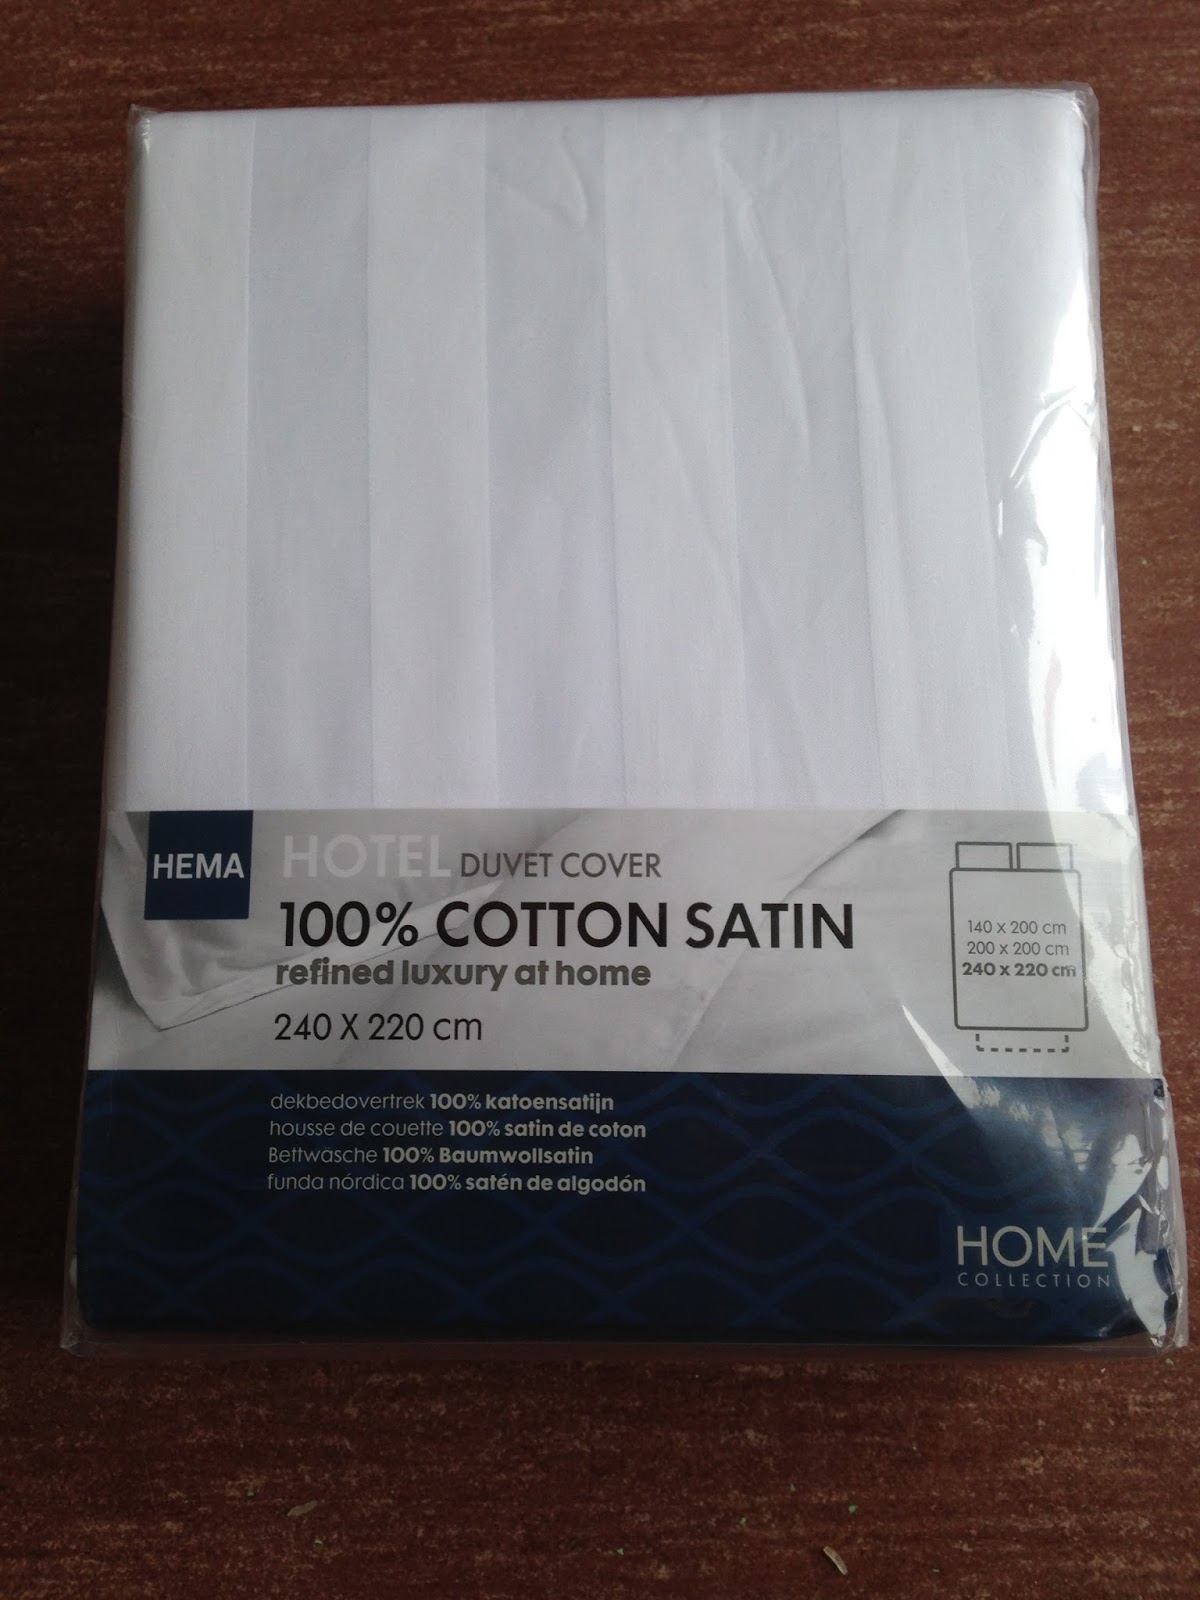 Hema dekbedhoes cotton satin: review | Review Eerst